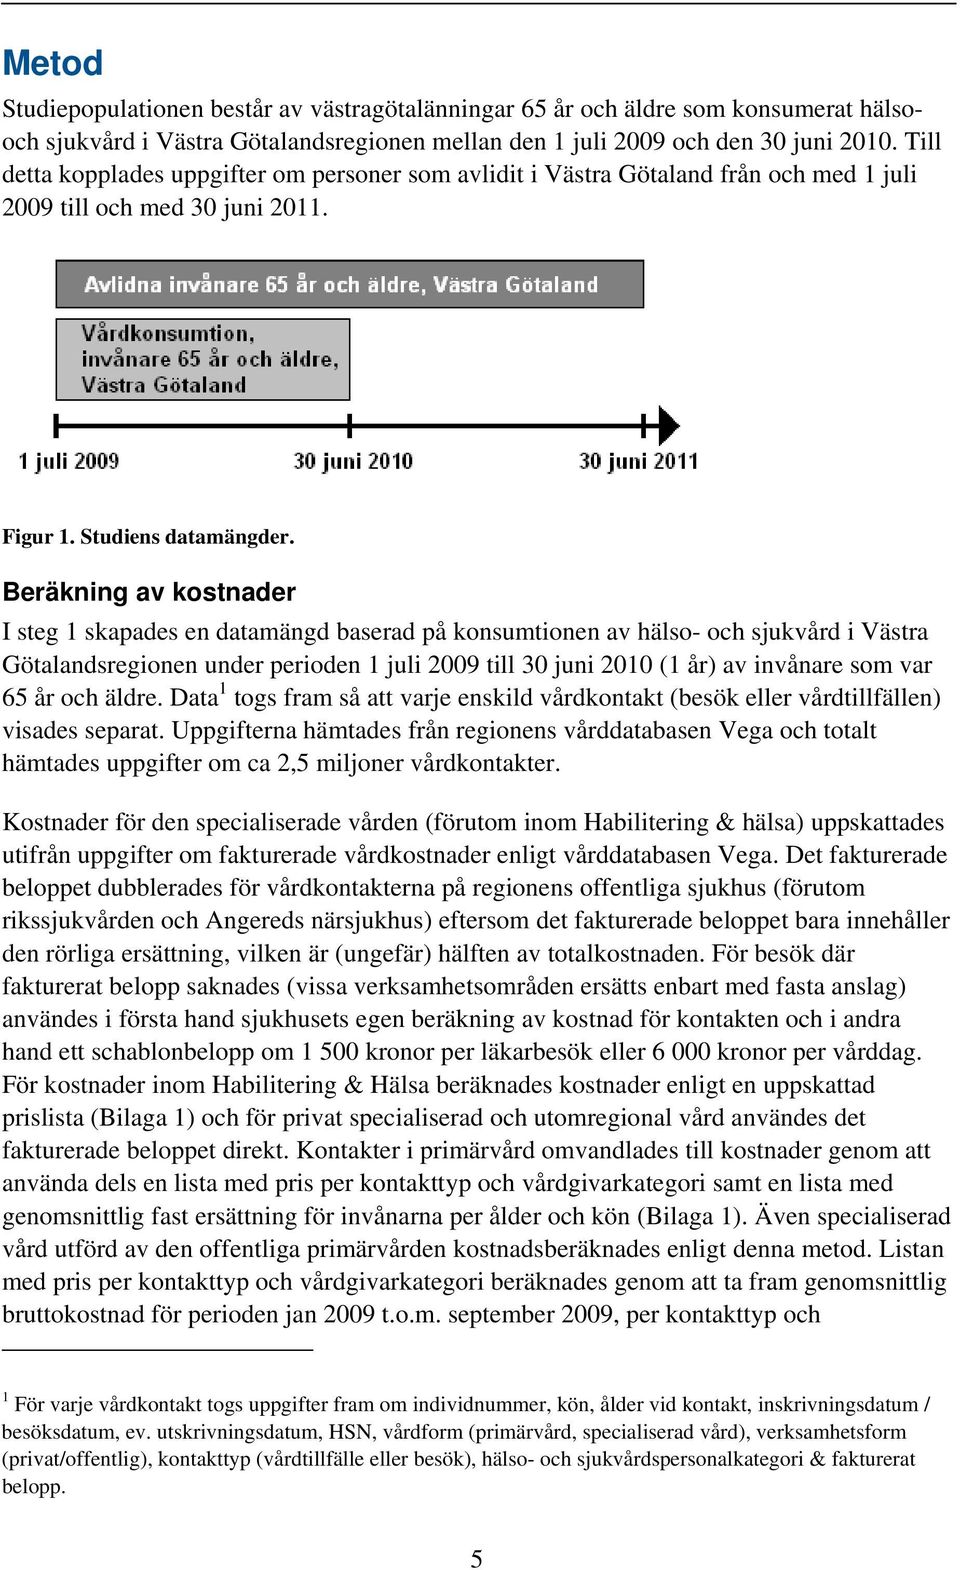 Beräkning av kostnader I steg 1 skapades en datamängd baserad på konsumtionen av hälso- och sjukvård i Västra Götalandsregionen under perioden 1 juli 2009 till 30 juni 2010 (1 år) av invånare som var